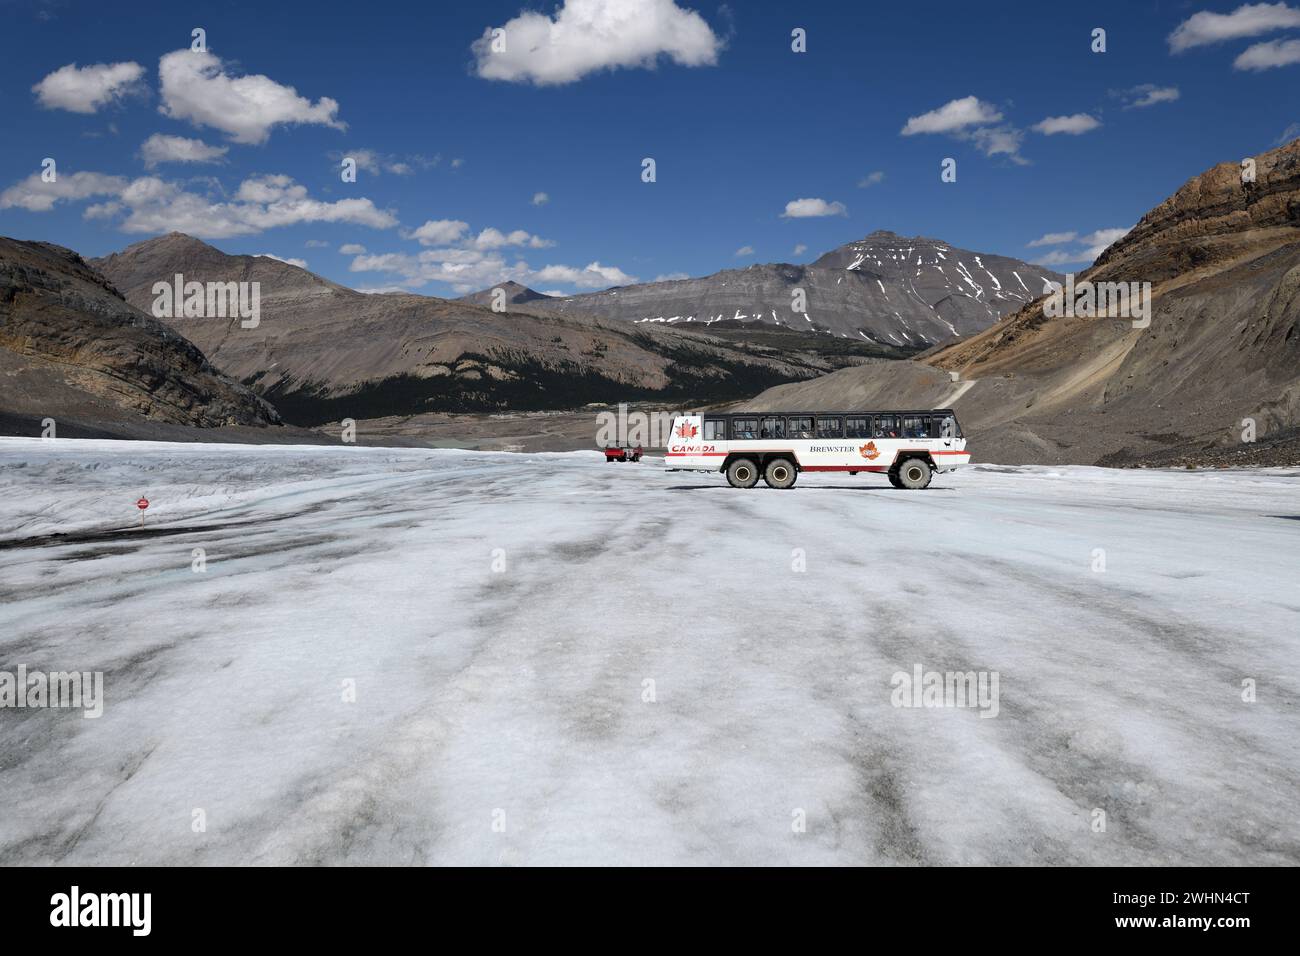 Un véhicule tout-terrain attend son tour pour gravir la montée rocheuse abrupte du champ de glace Columbia Glacier Athabasca dans le parc national Jasper, en Alberta Banque D'Images